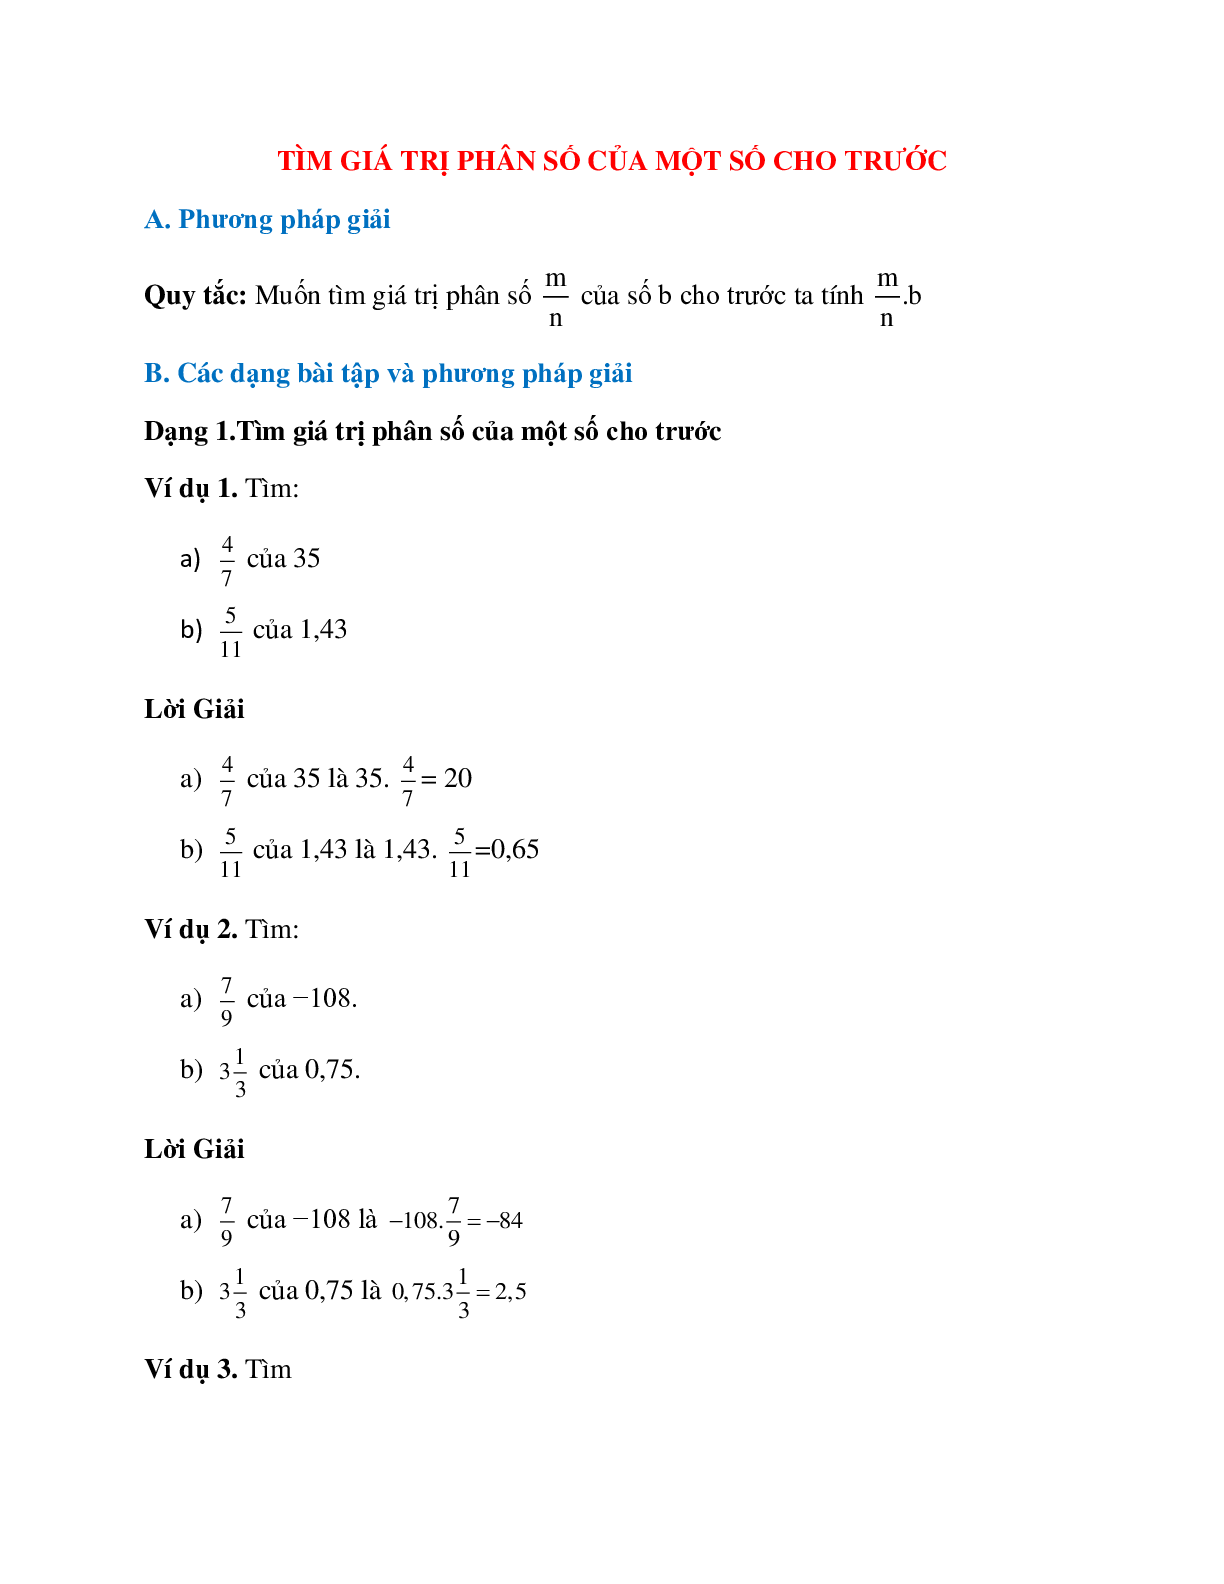 Bài tập về Tìm giá trị phân số của một số cho trước có lời giải (trang 1)